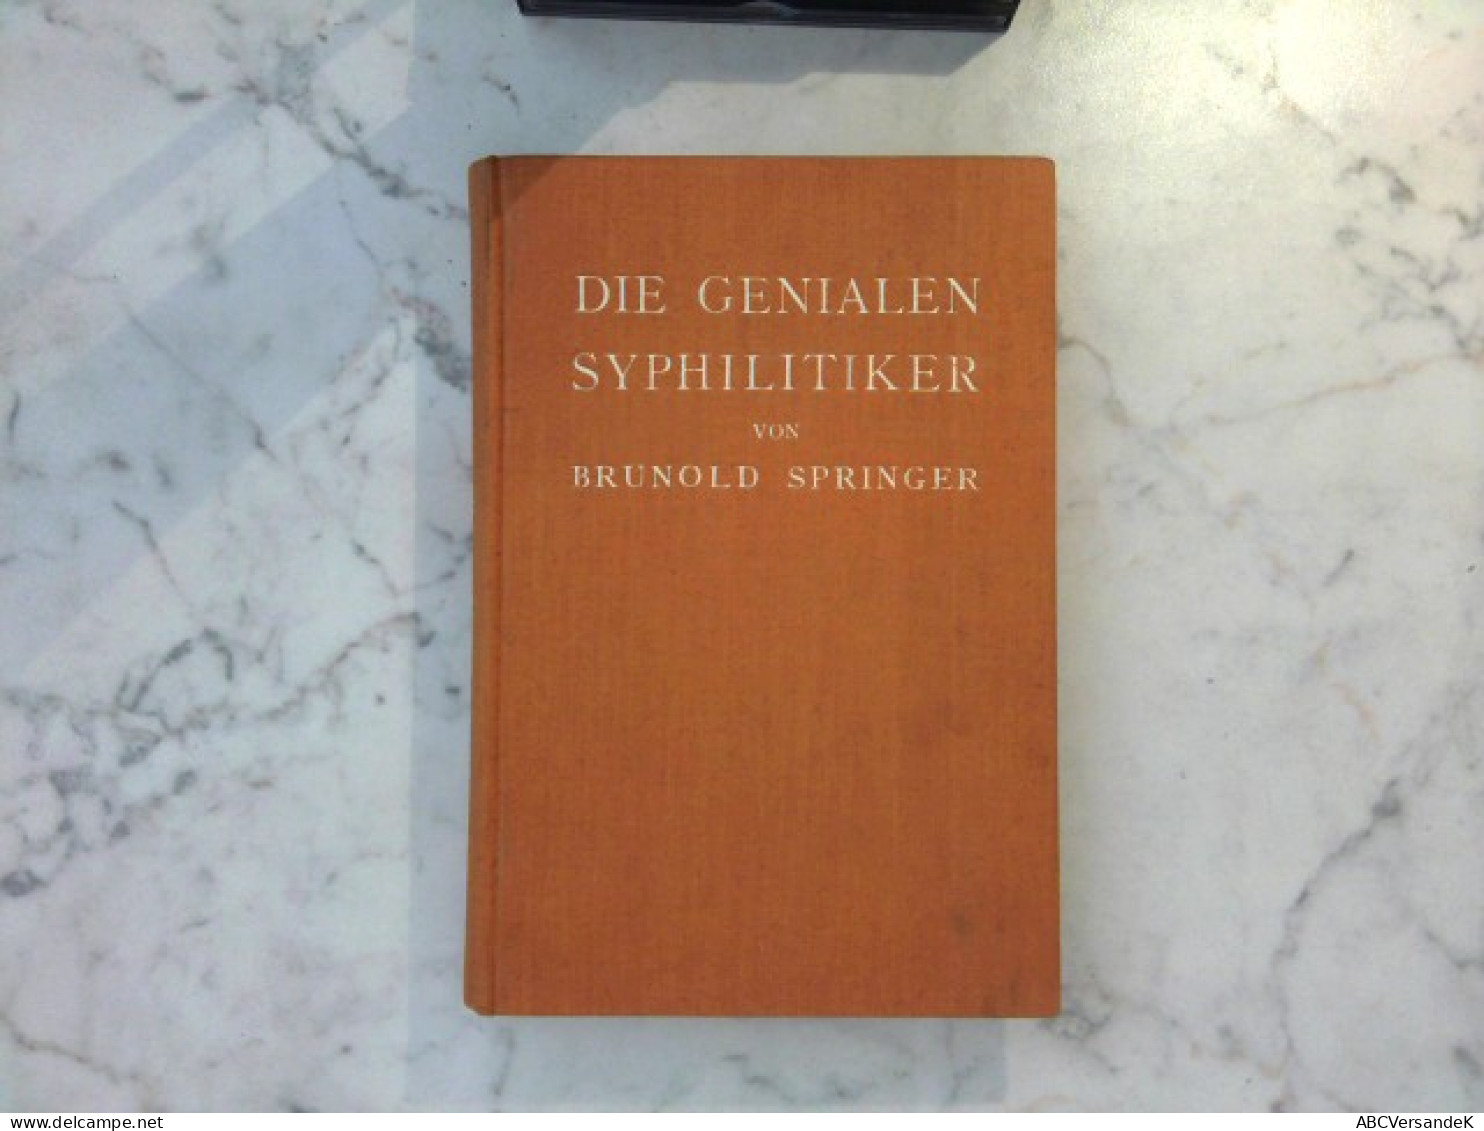 Die Genialen Syphilitiker - Health & Medecine